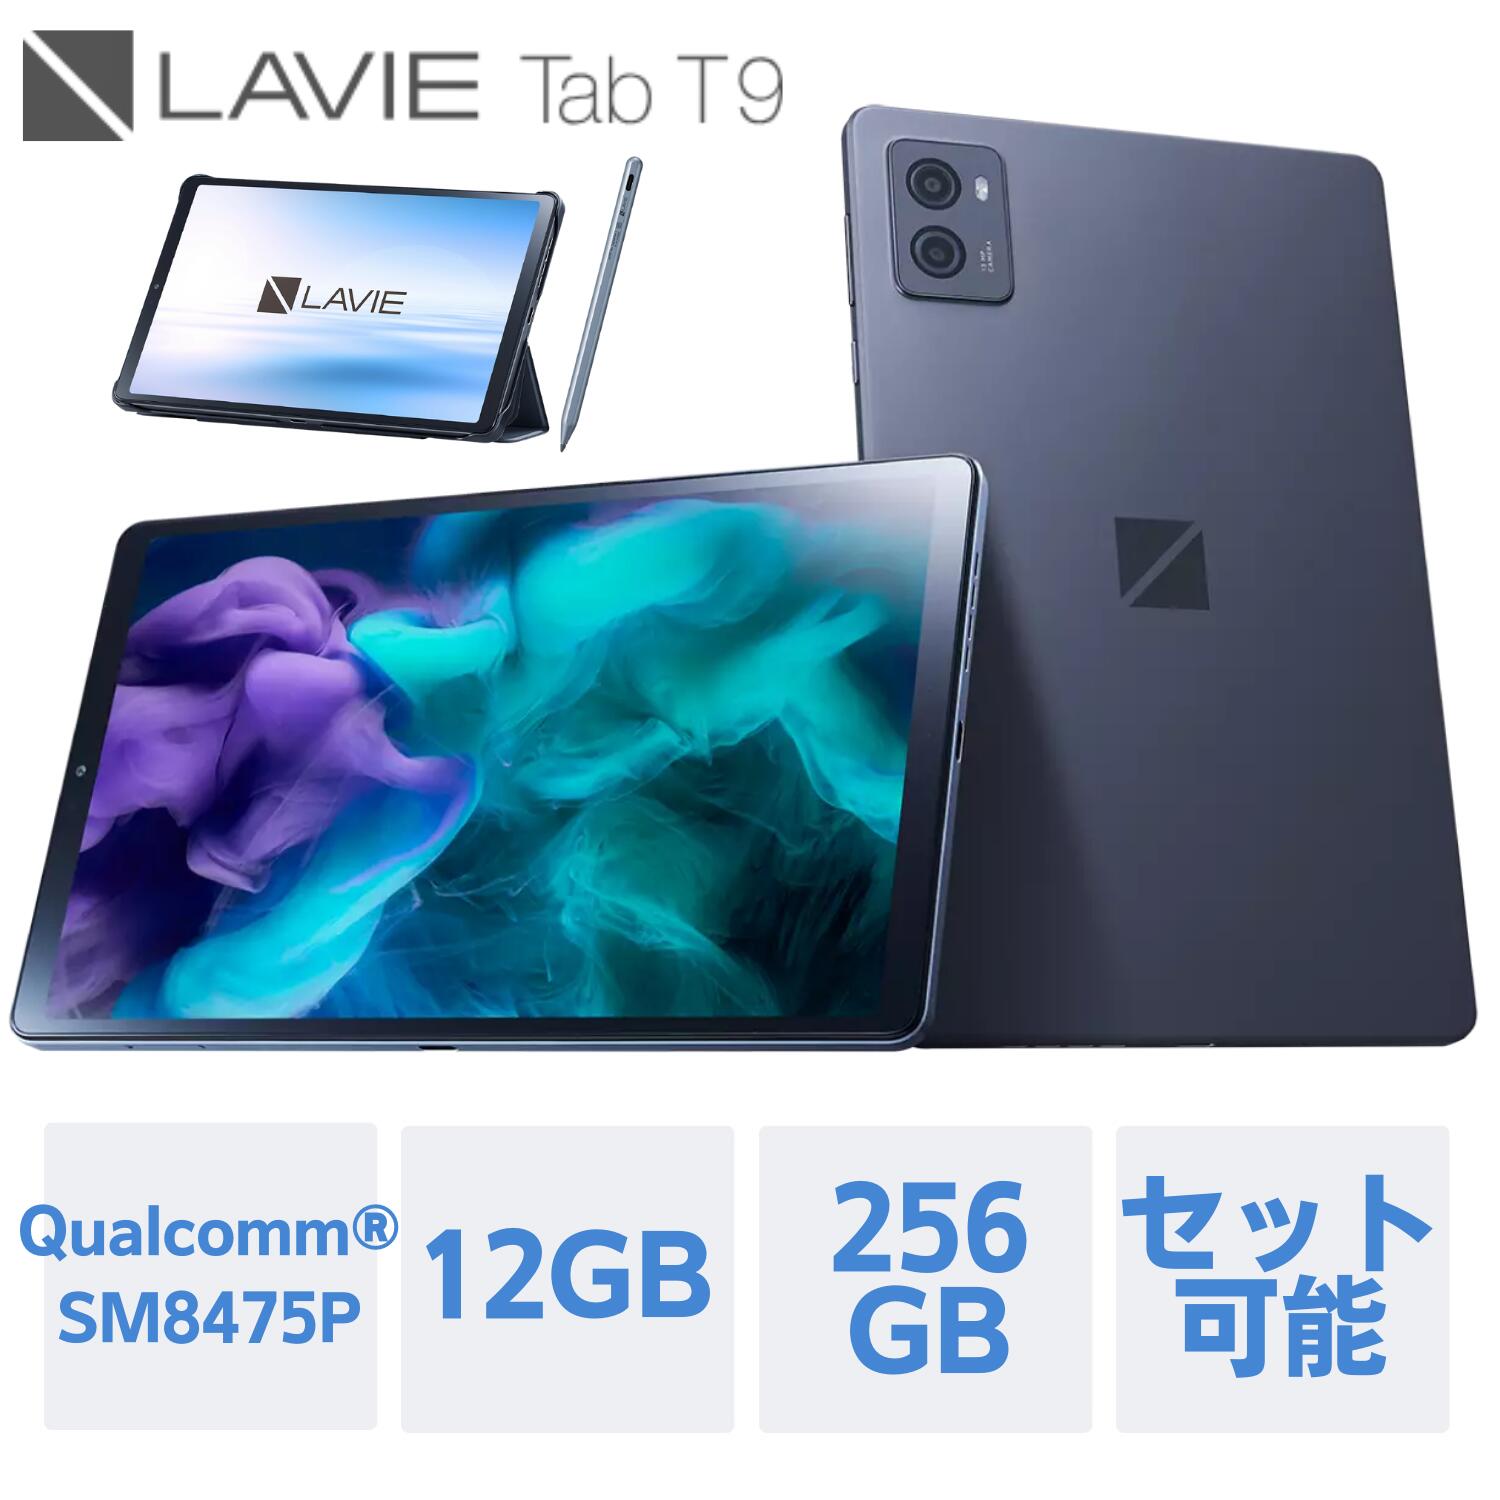  NEC LAVIE 日本 メーカー タブレット Android 13 wi-fiモデル Qualcomm SM8475P 9インチ 12GB 256GB PC-TAB09Q01 液晶保護フィルム カバー ペン